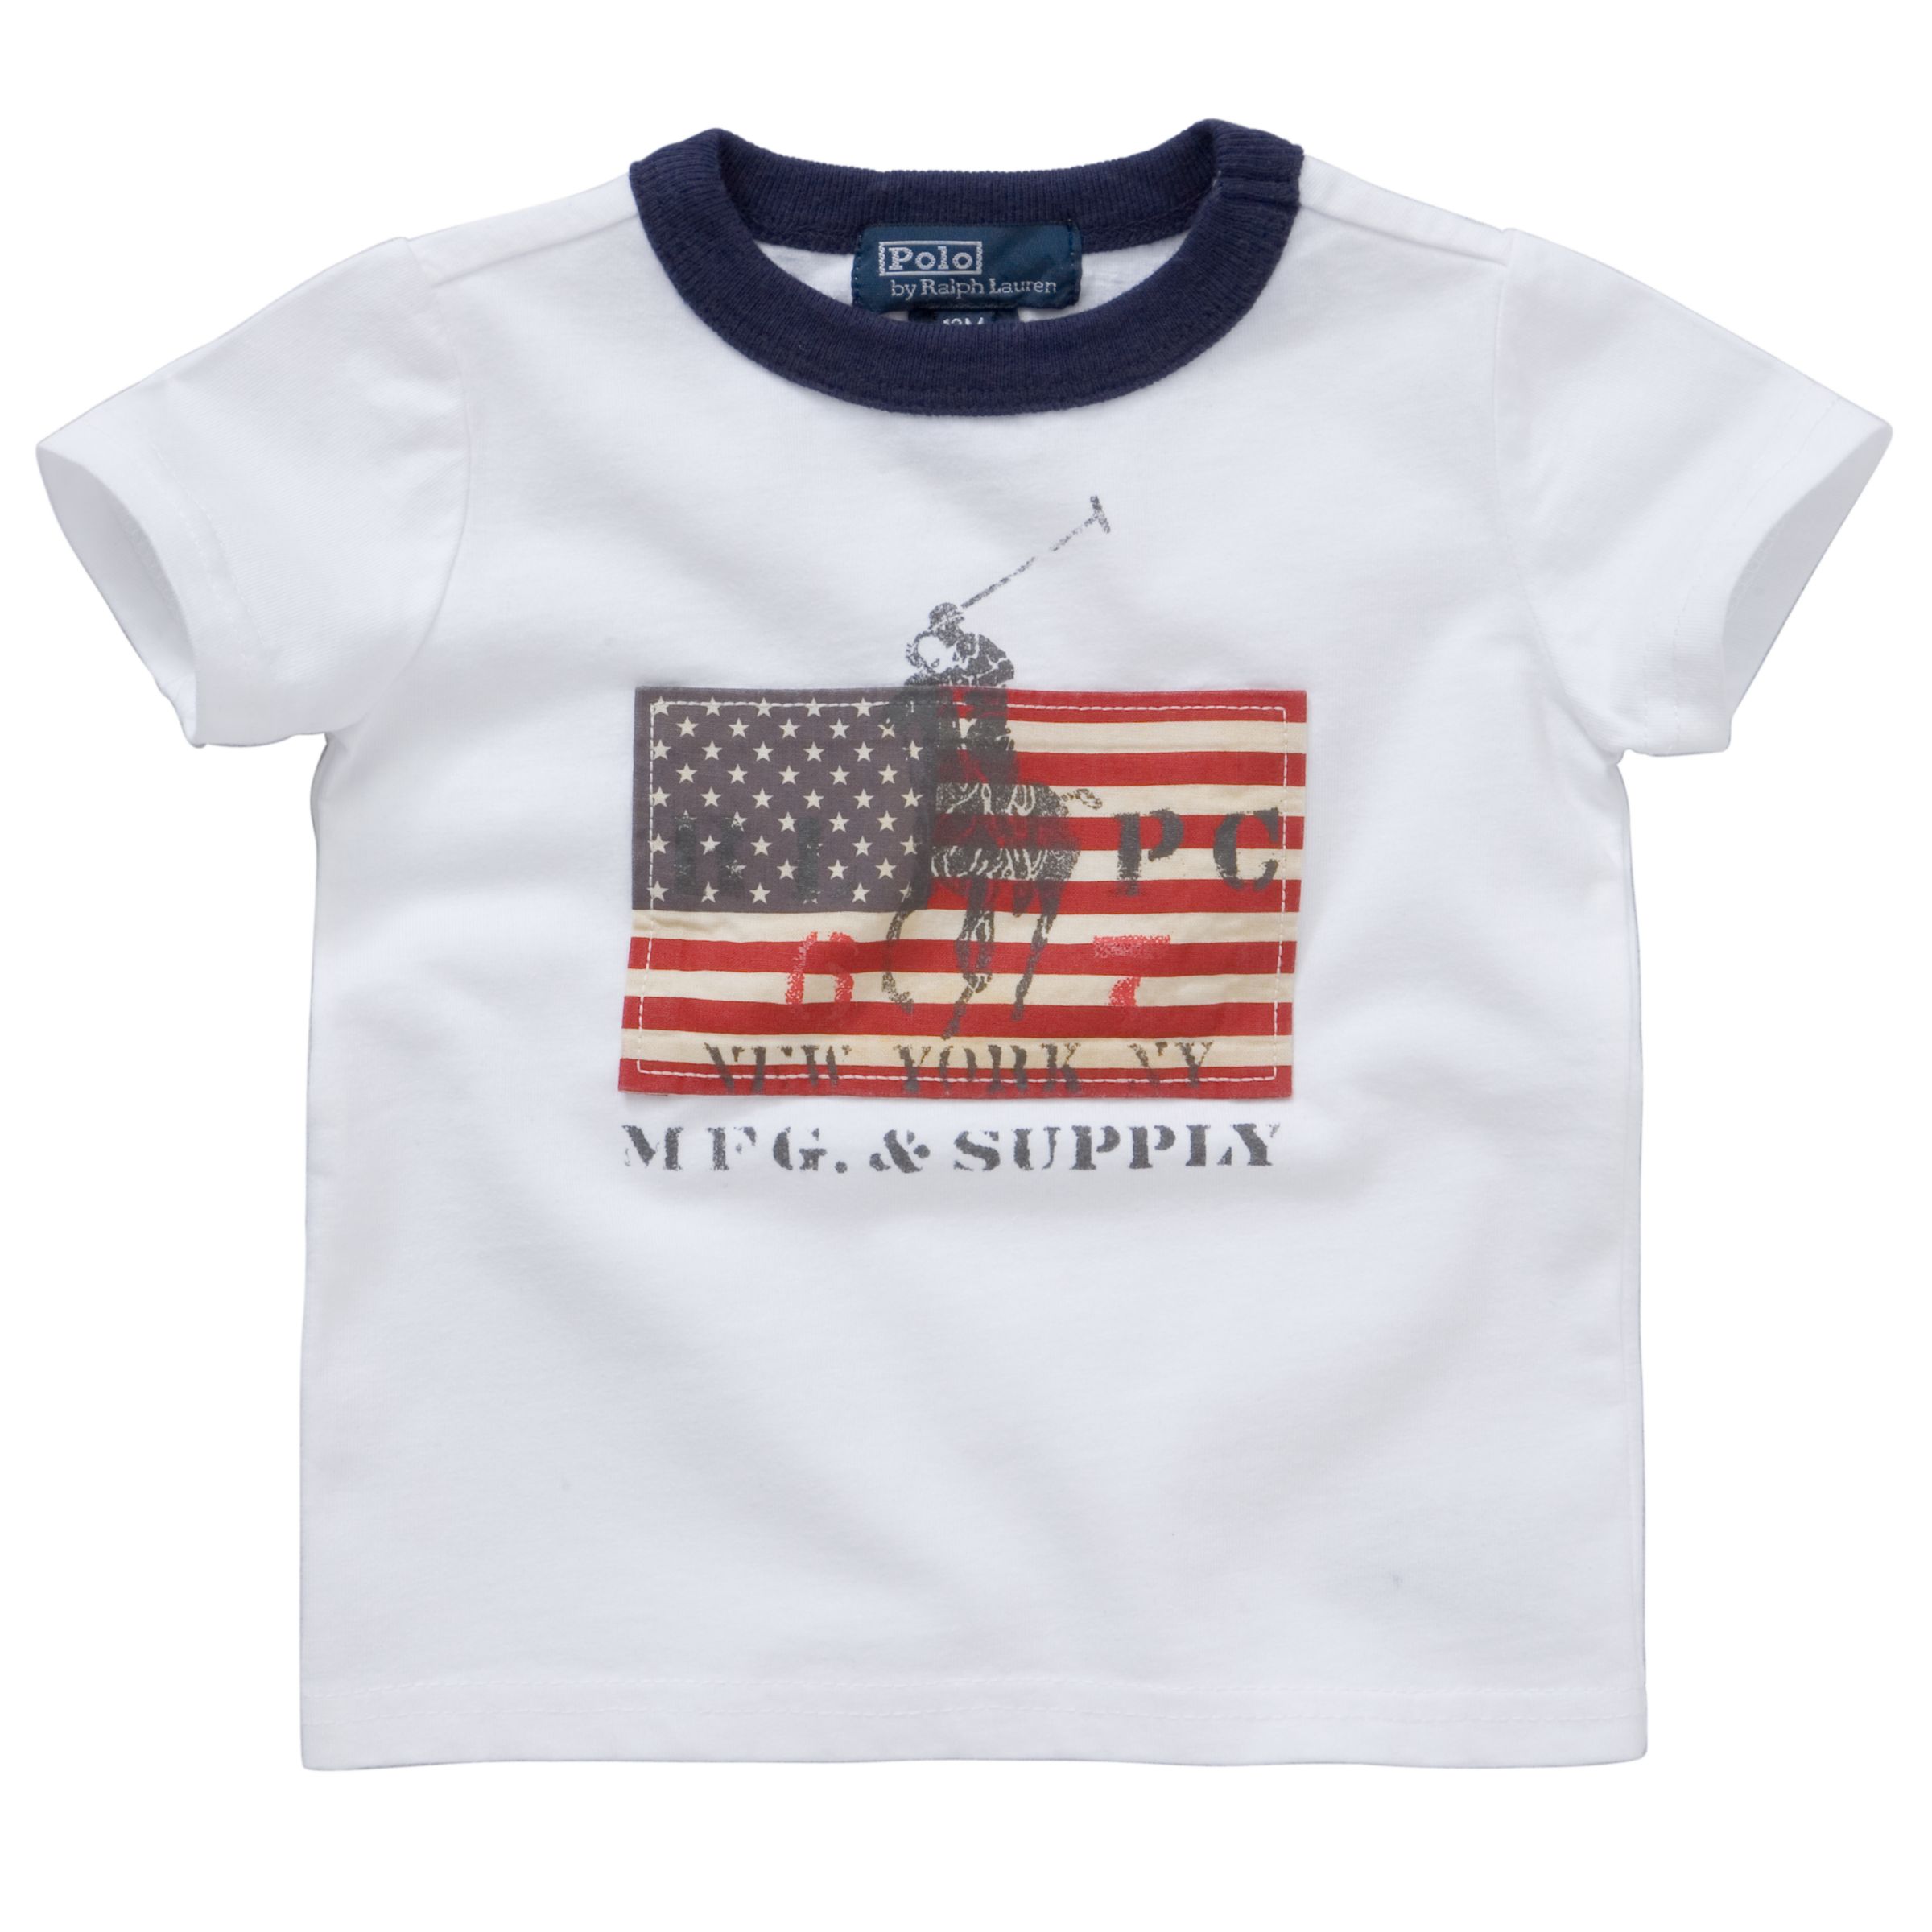 USA Ringer T-Shirt, White